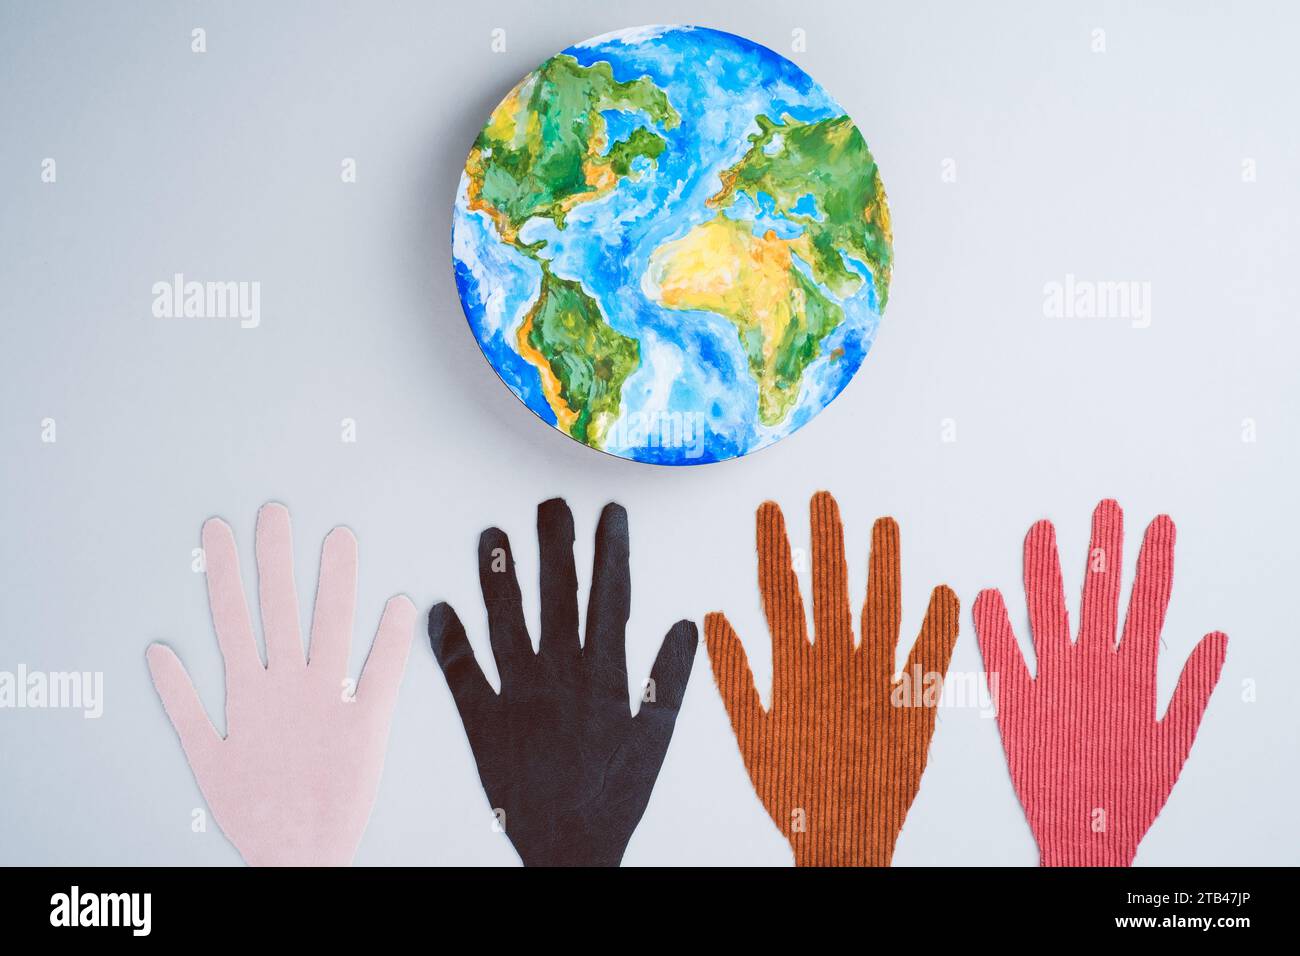 Internationaler Tag der Toleranz mit dem Planeten Erde. Green Energy, ESG, Environmental. Isoliert auf grauem Hintergrund. Draufsicht Stockfoto